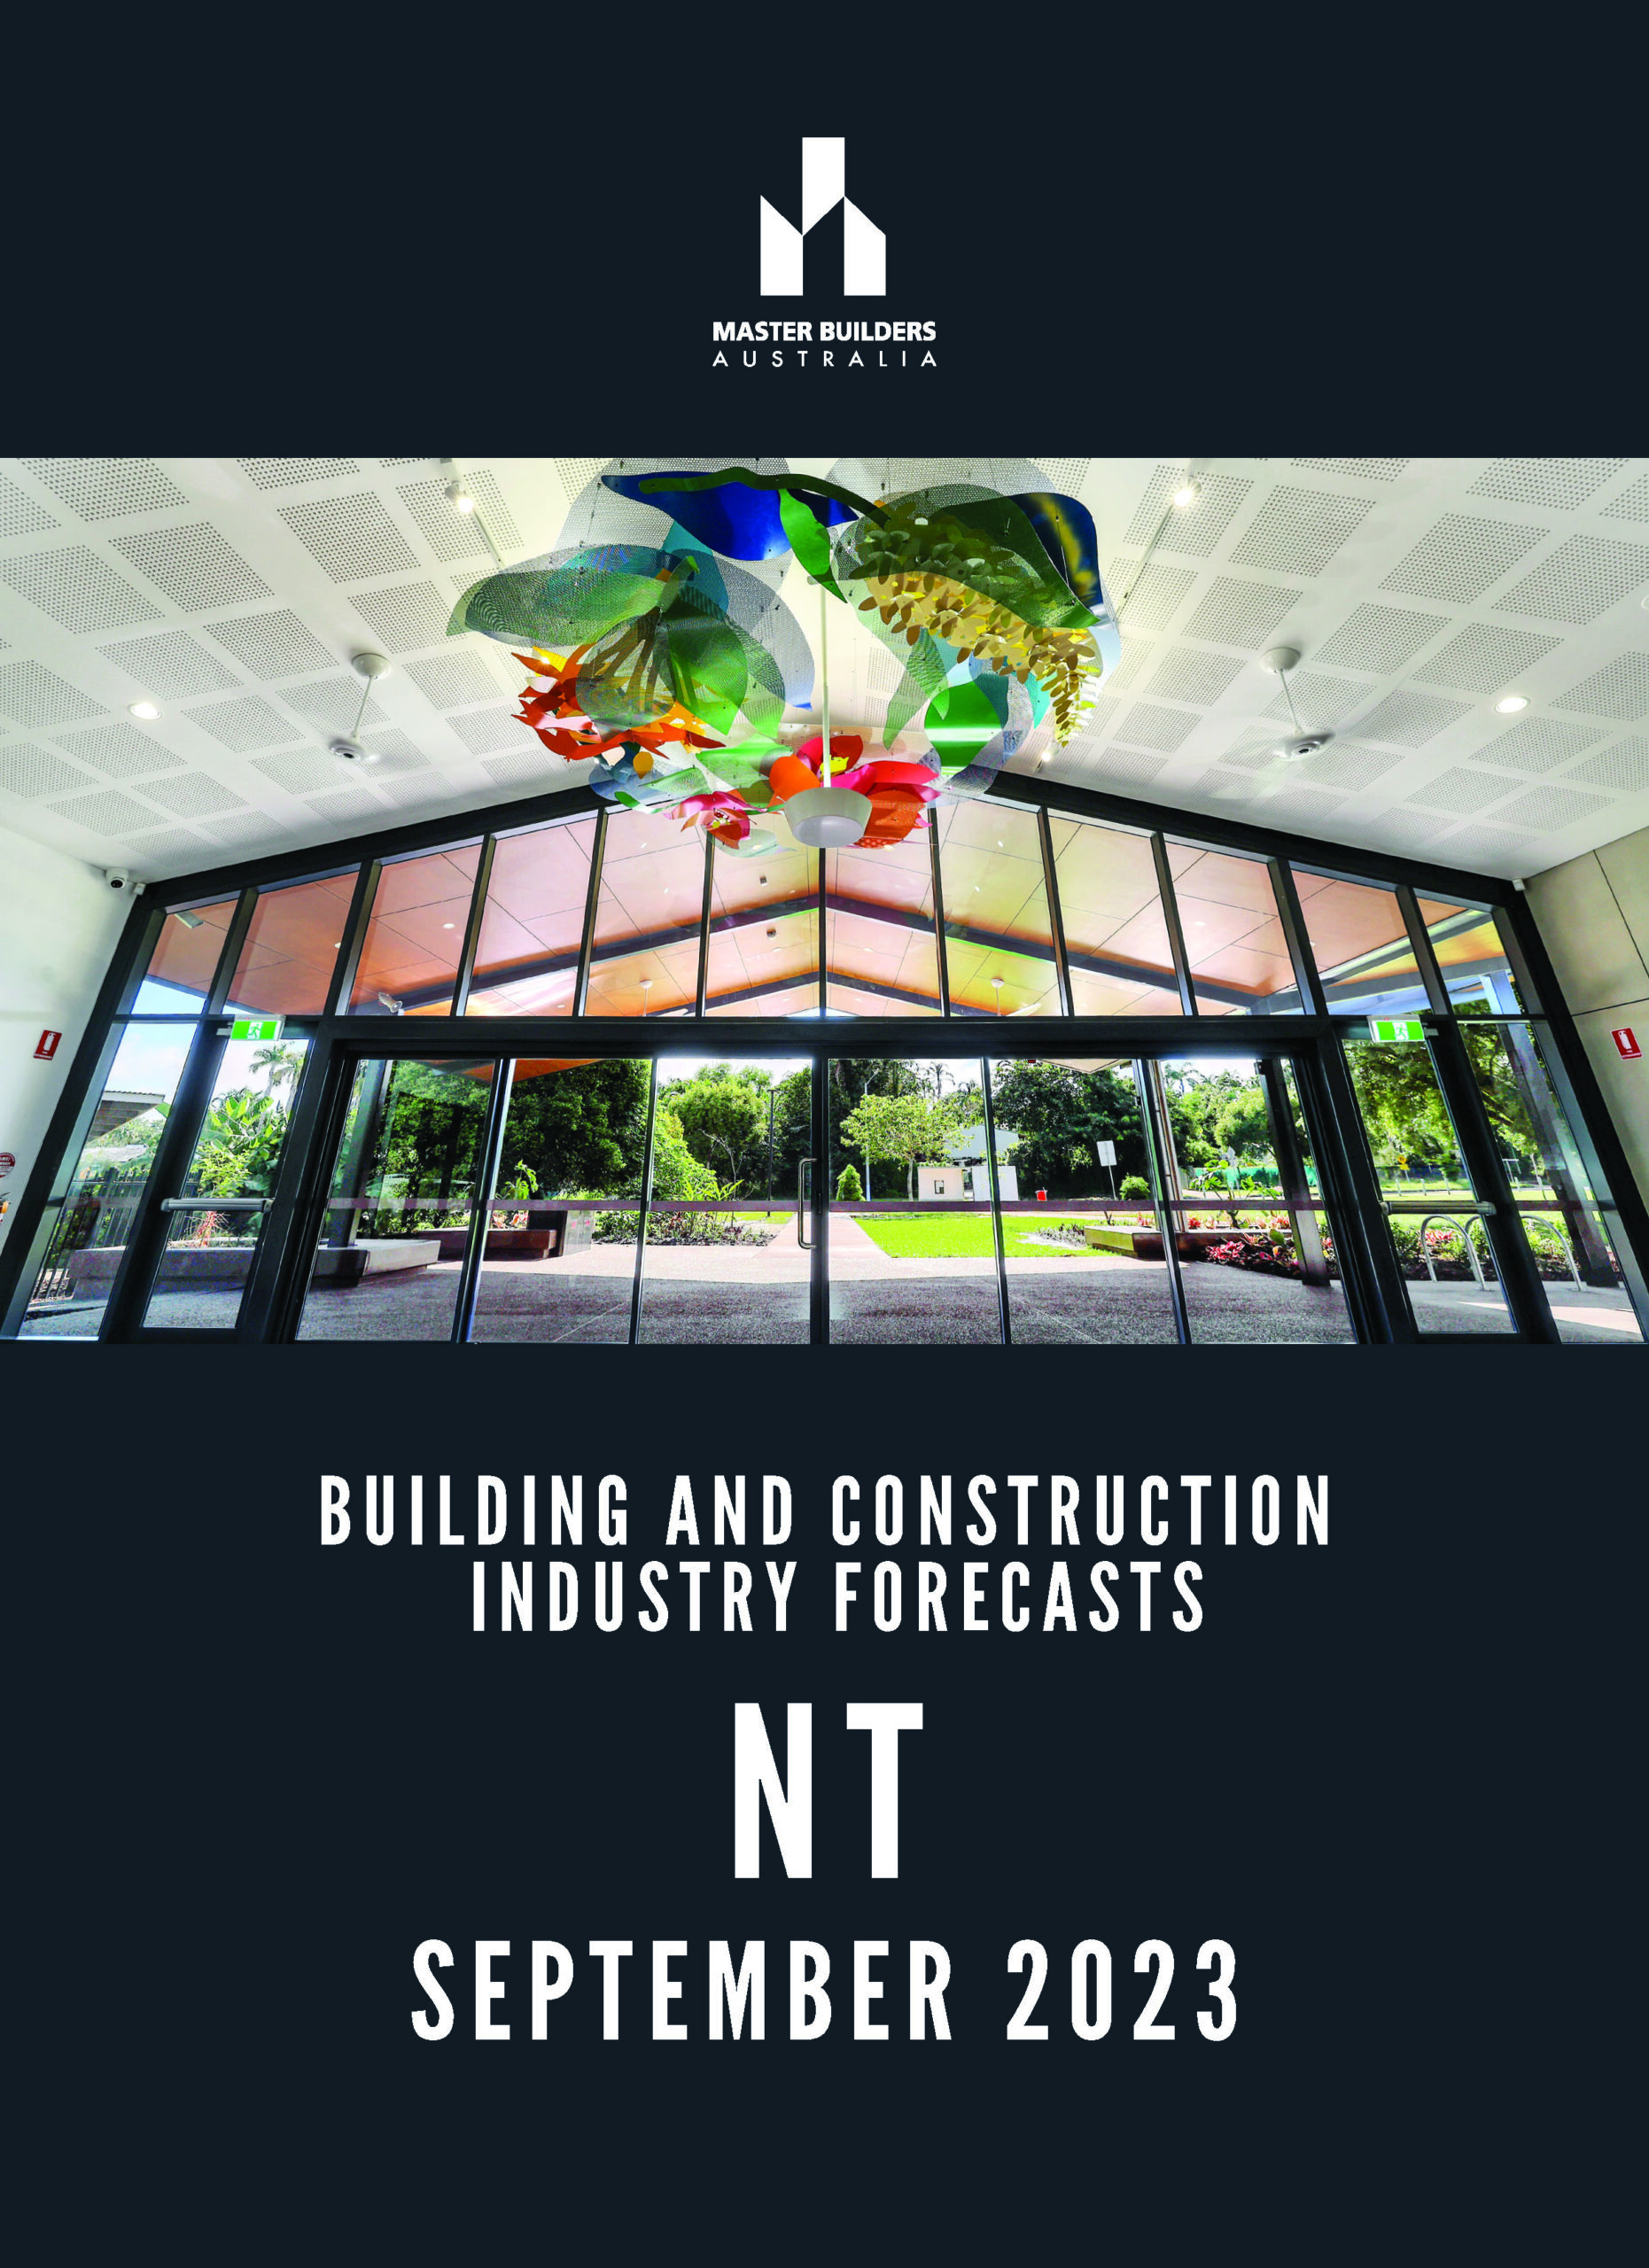 NT Forecast September 2023